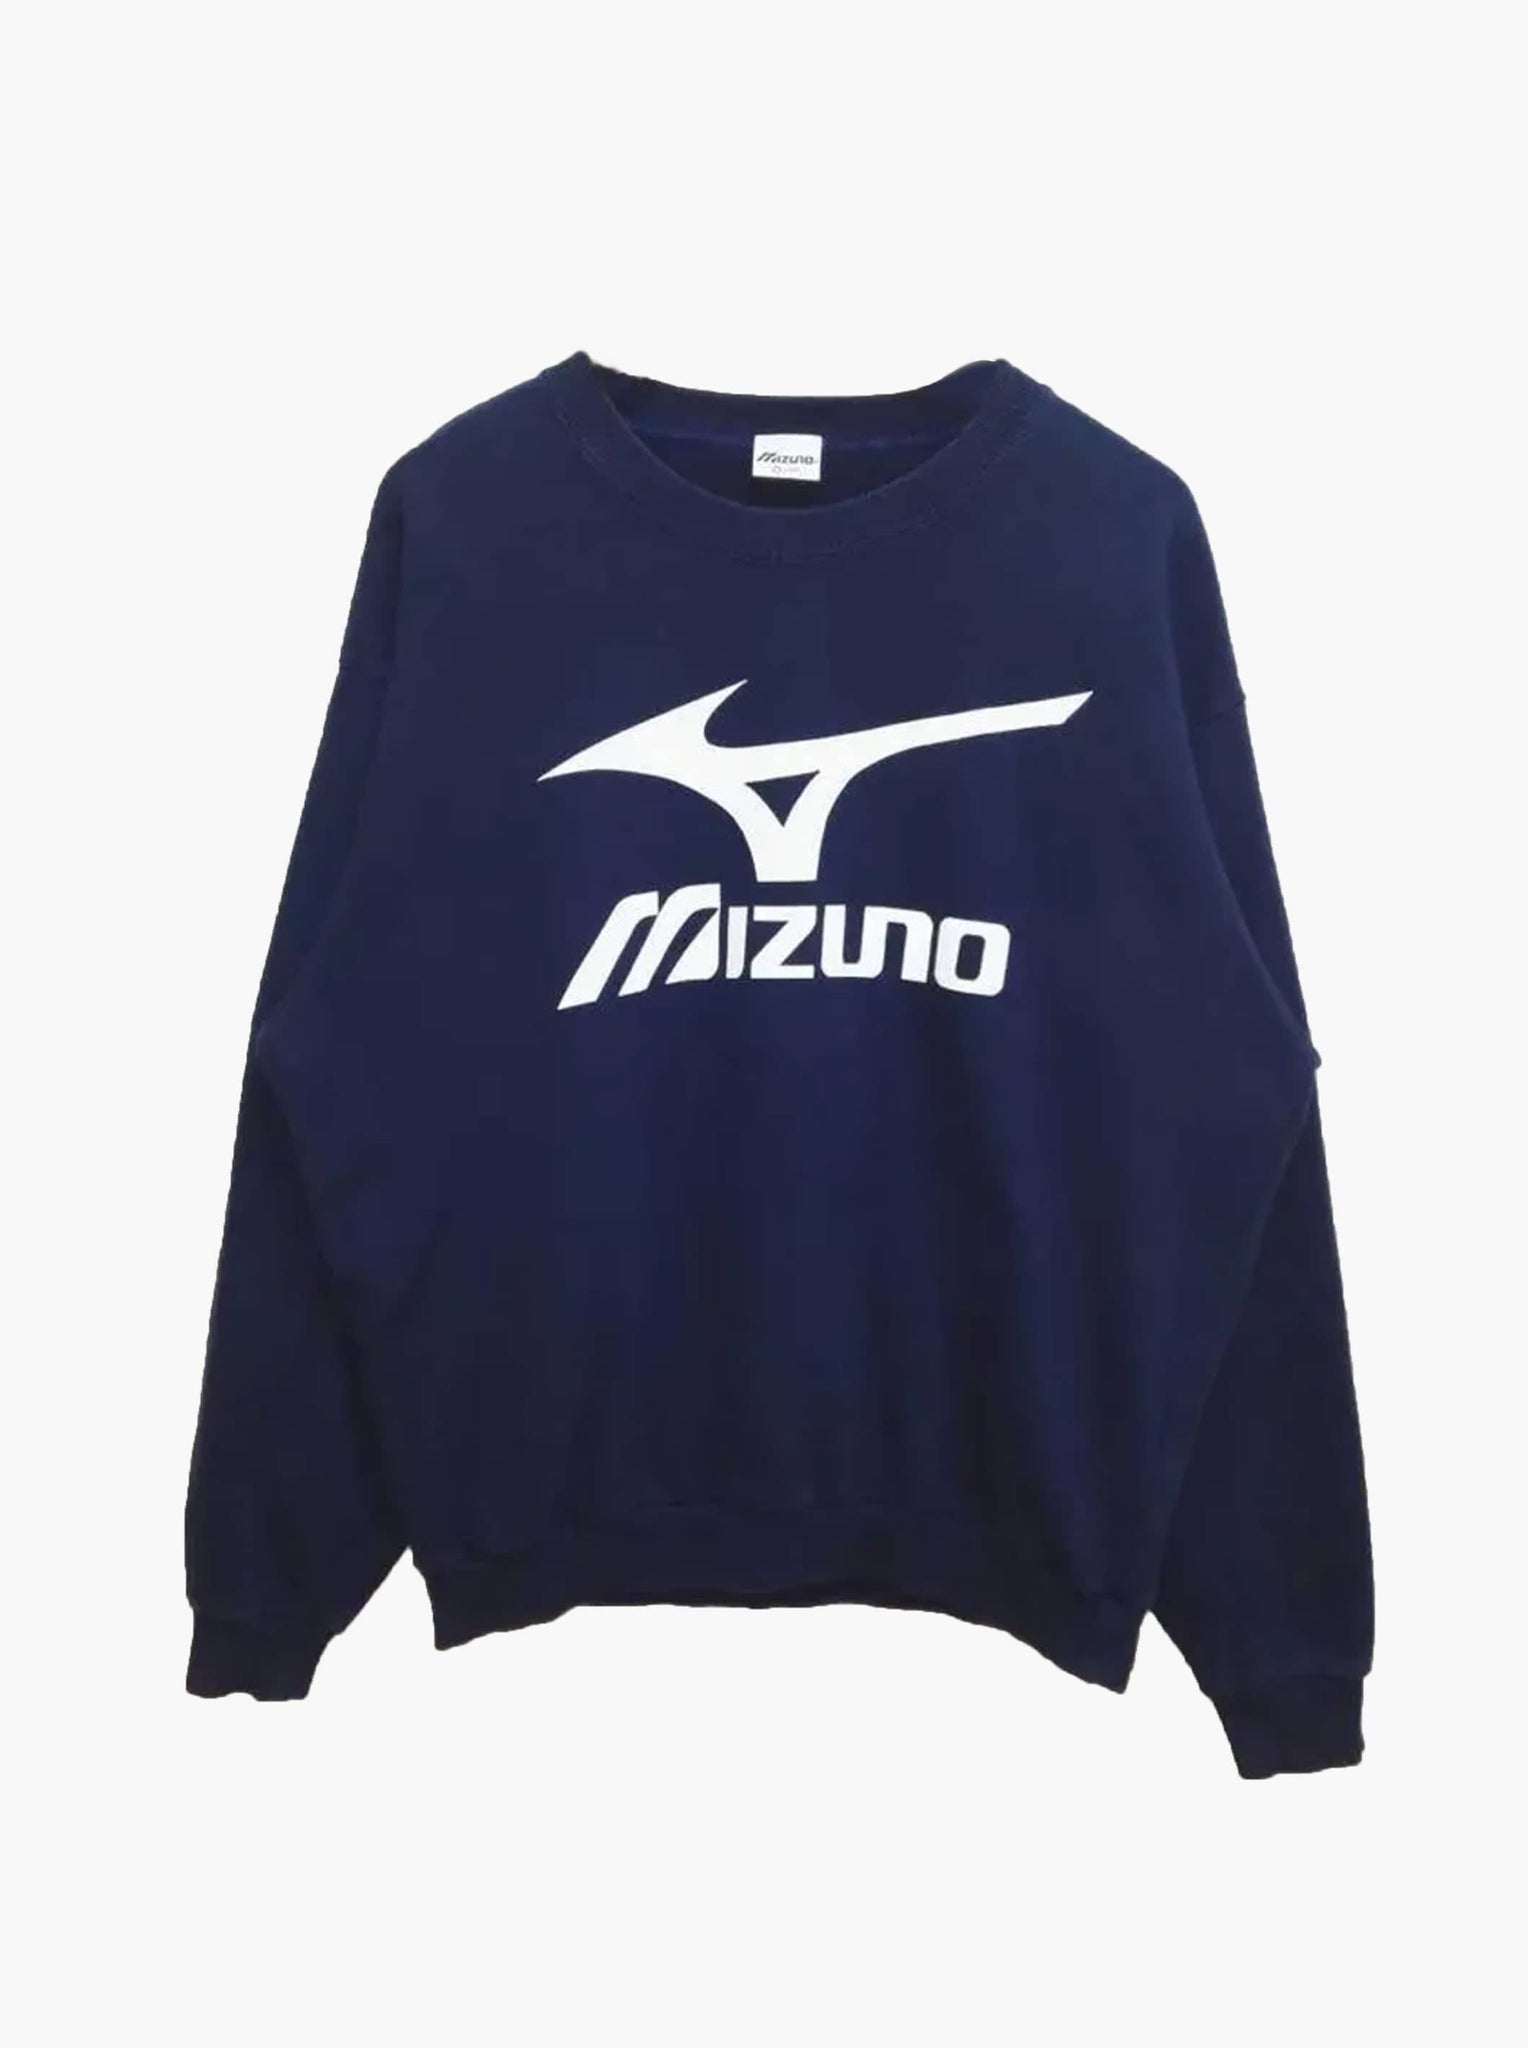 Rare Vintage Mizuno Crewneck Big Logo Sweatshirt — L